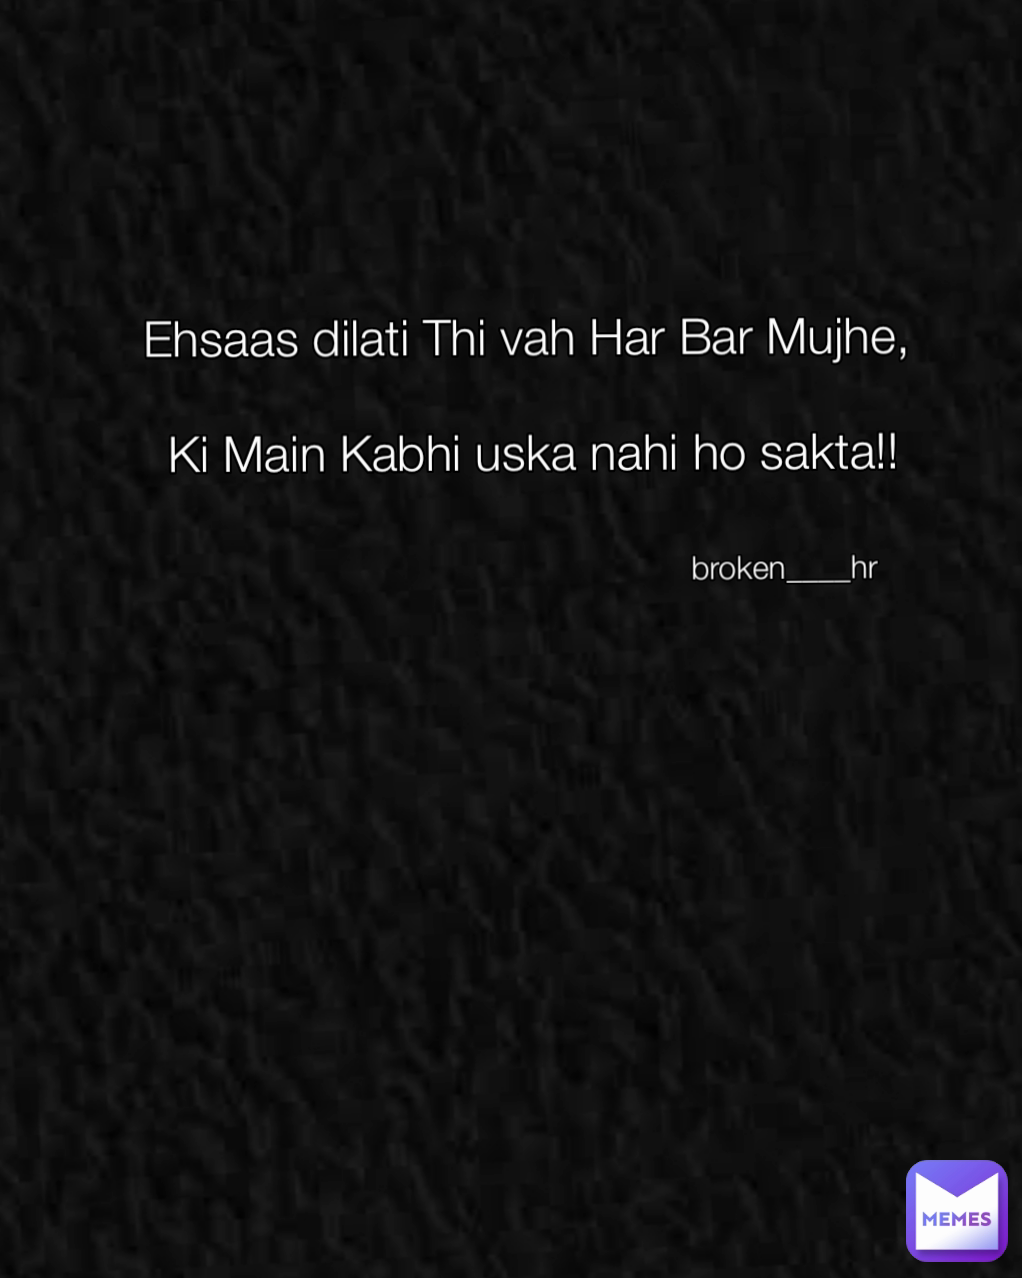 Ehsaas dilati Thi vah Har Bar Mujhe,

 Ki Main Kabhi uska nahi ho sakta!! broken____hr